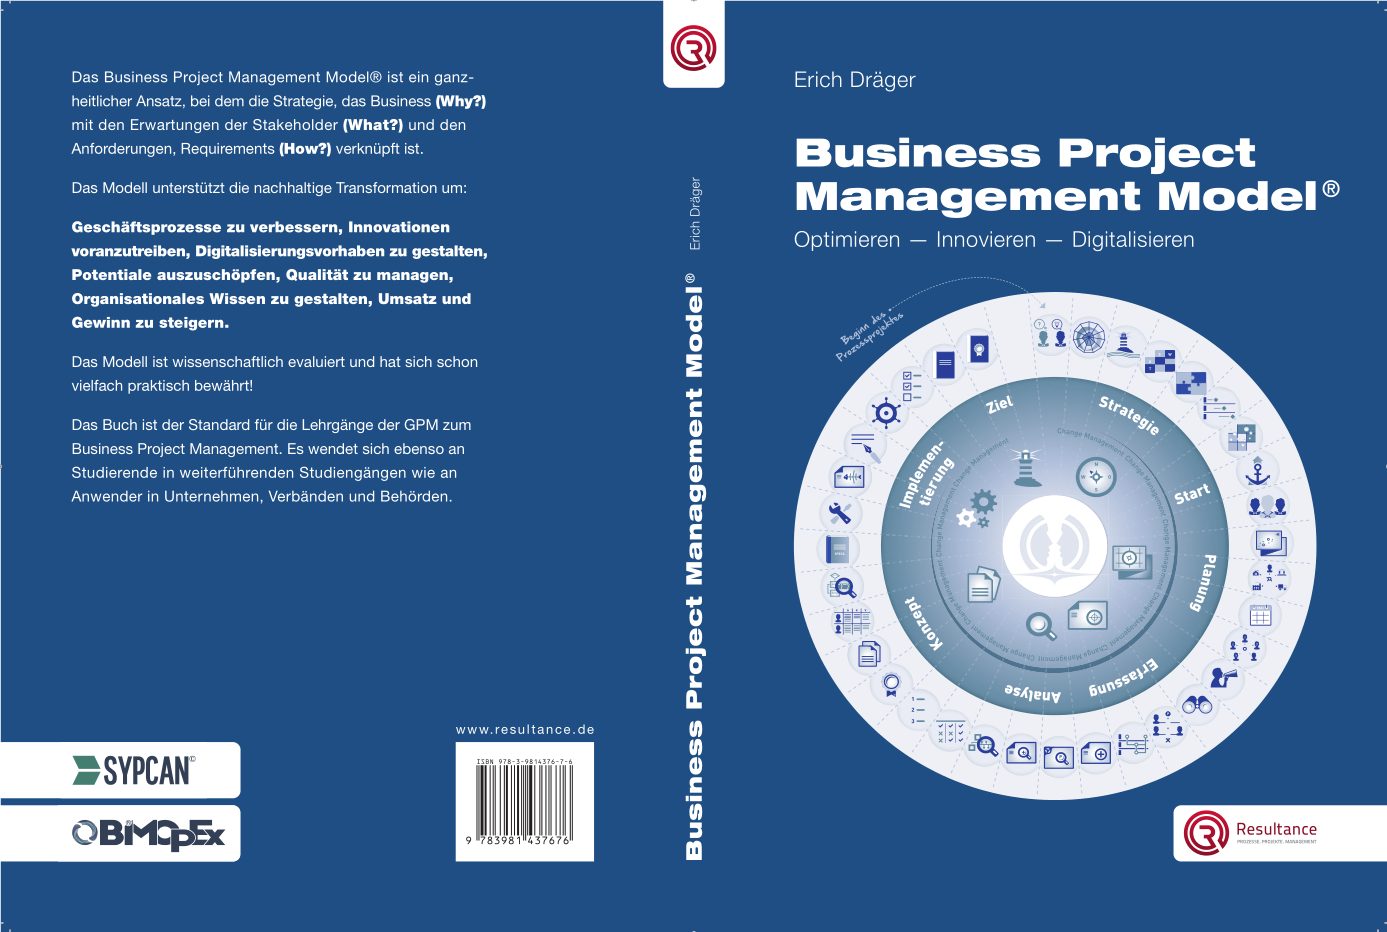 Business Project Management Model - Optimieren - Innovieren - Digitalisieren